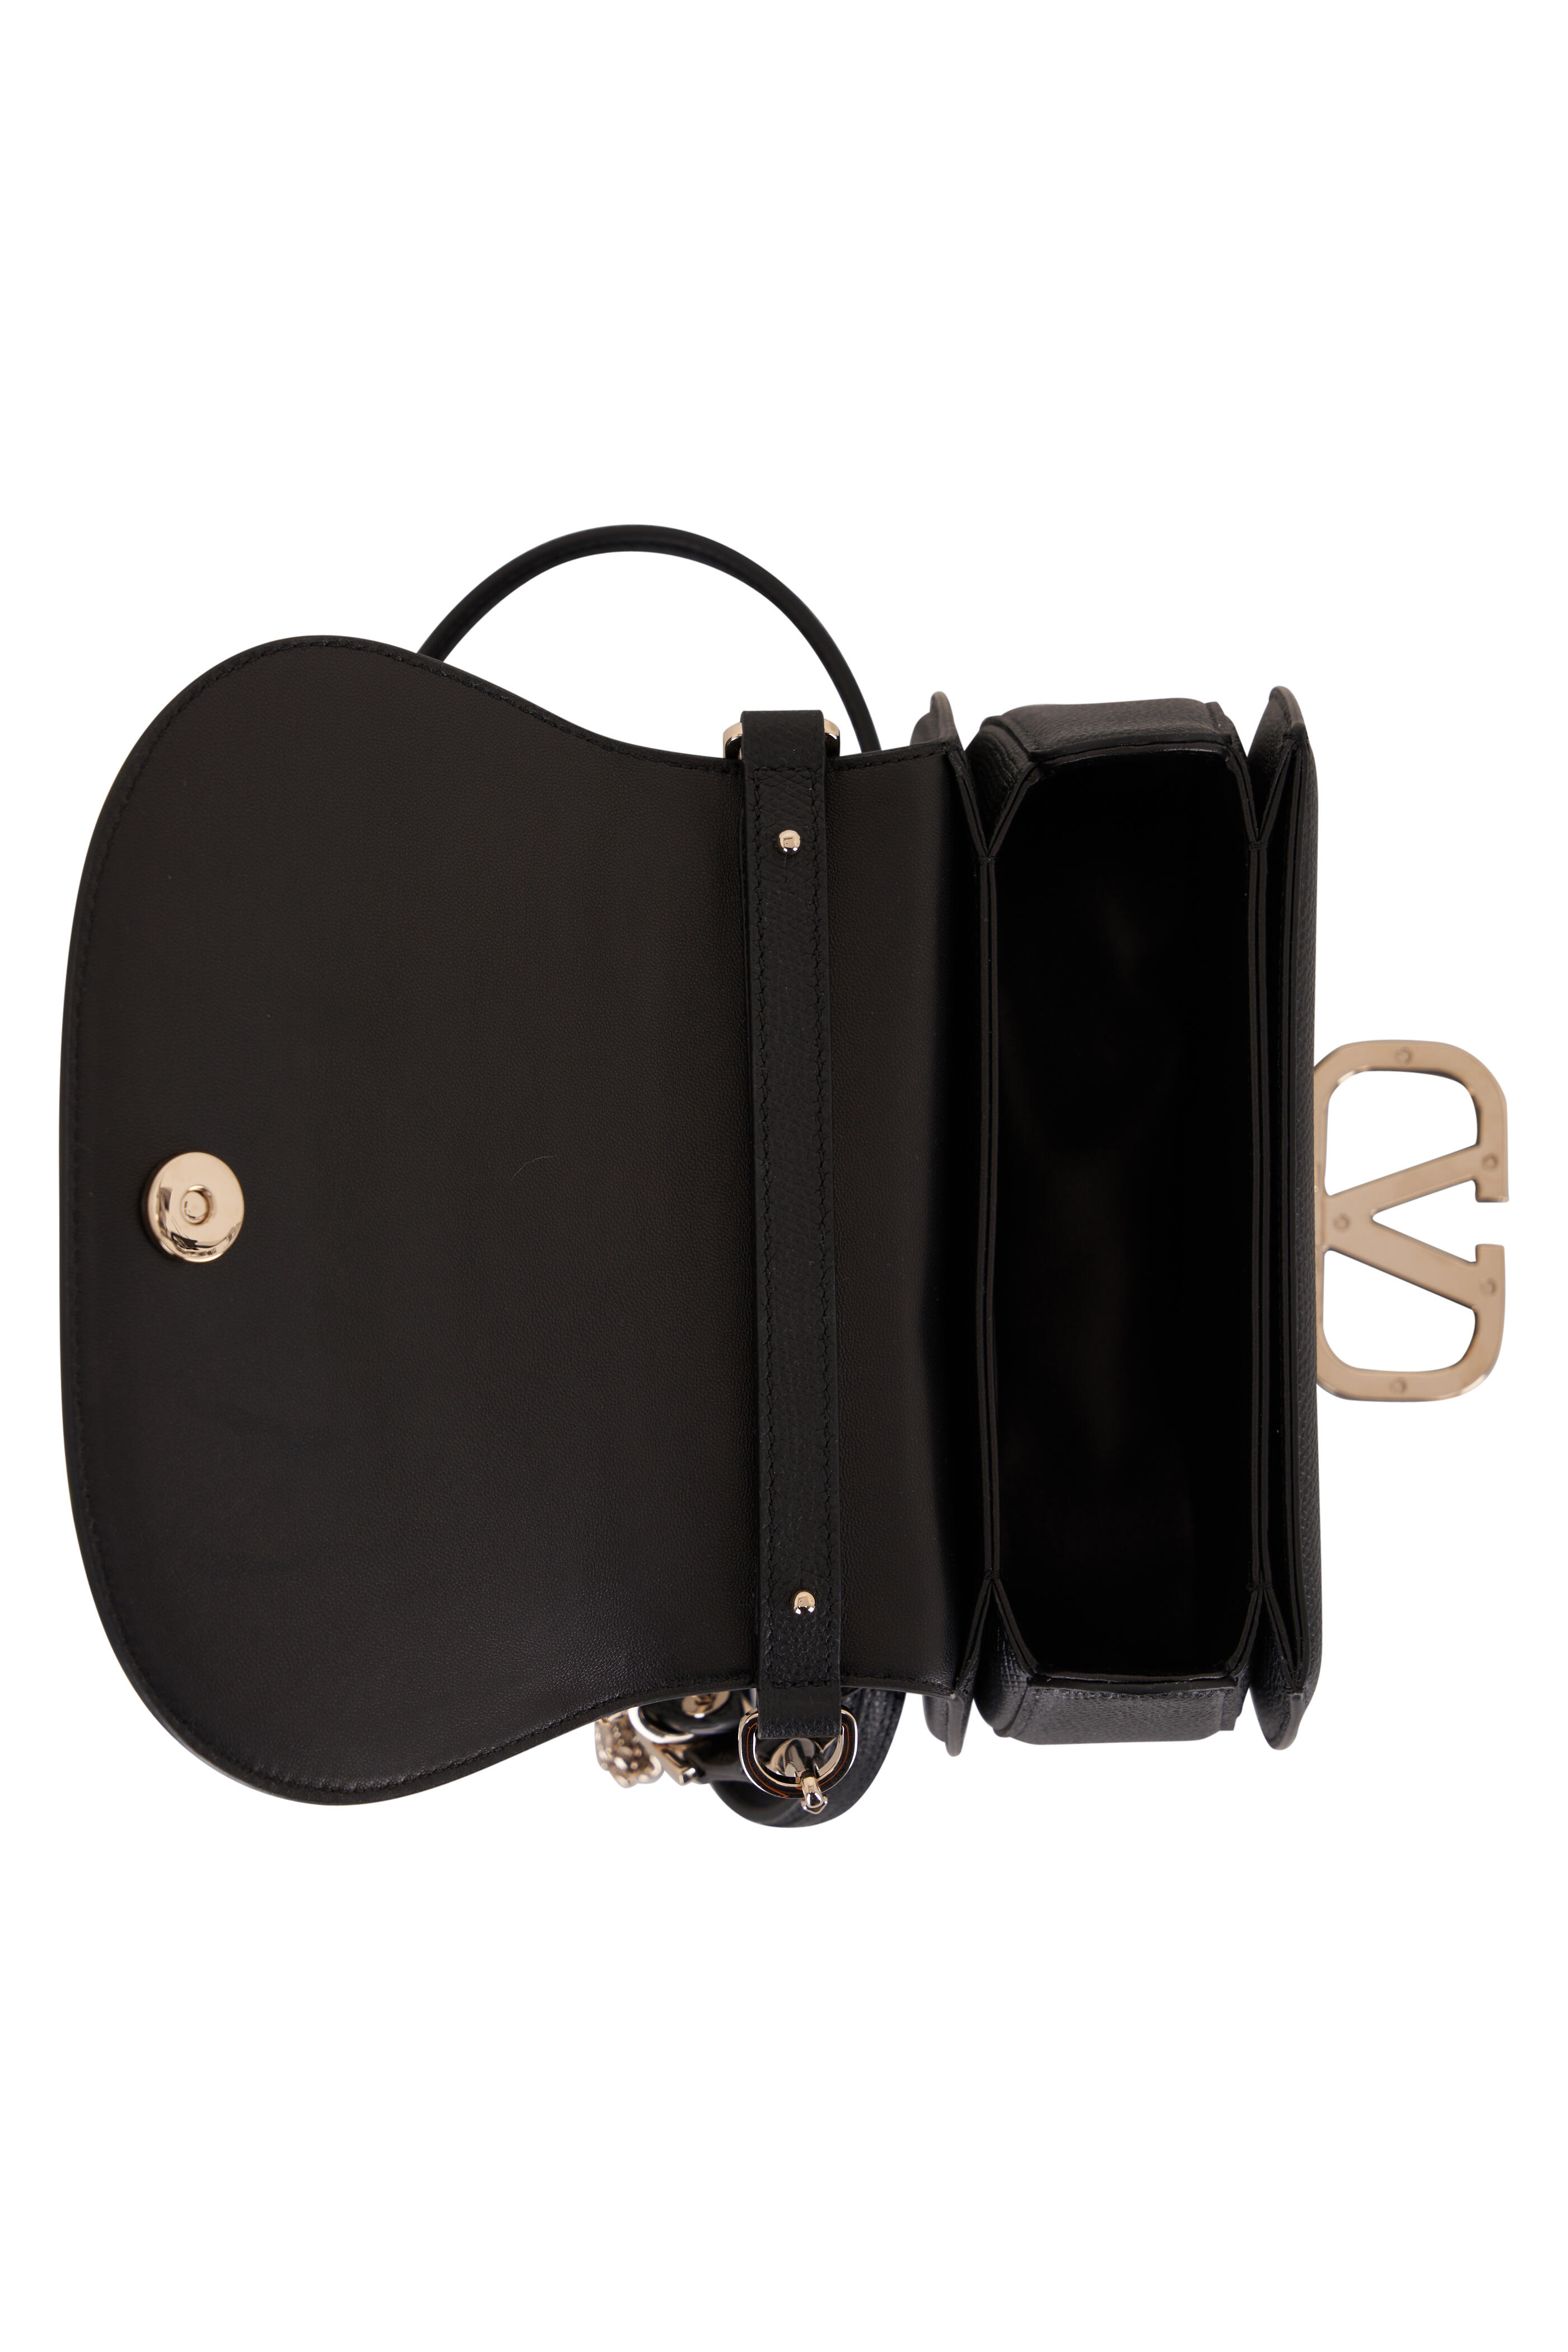 Valentino Garavani Black VSLING Mini Leather Shoulder Bag - ShopStyle